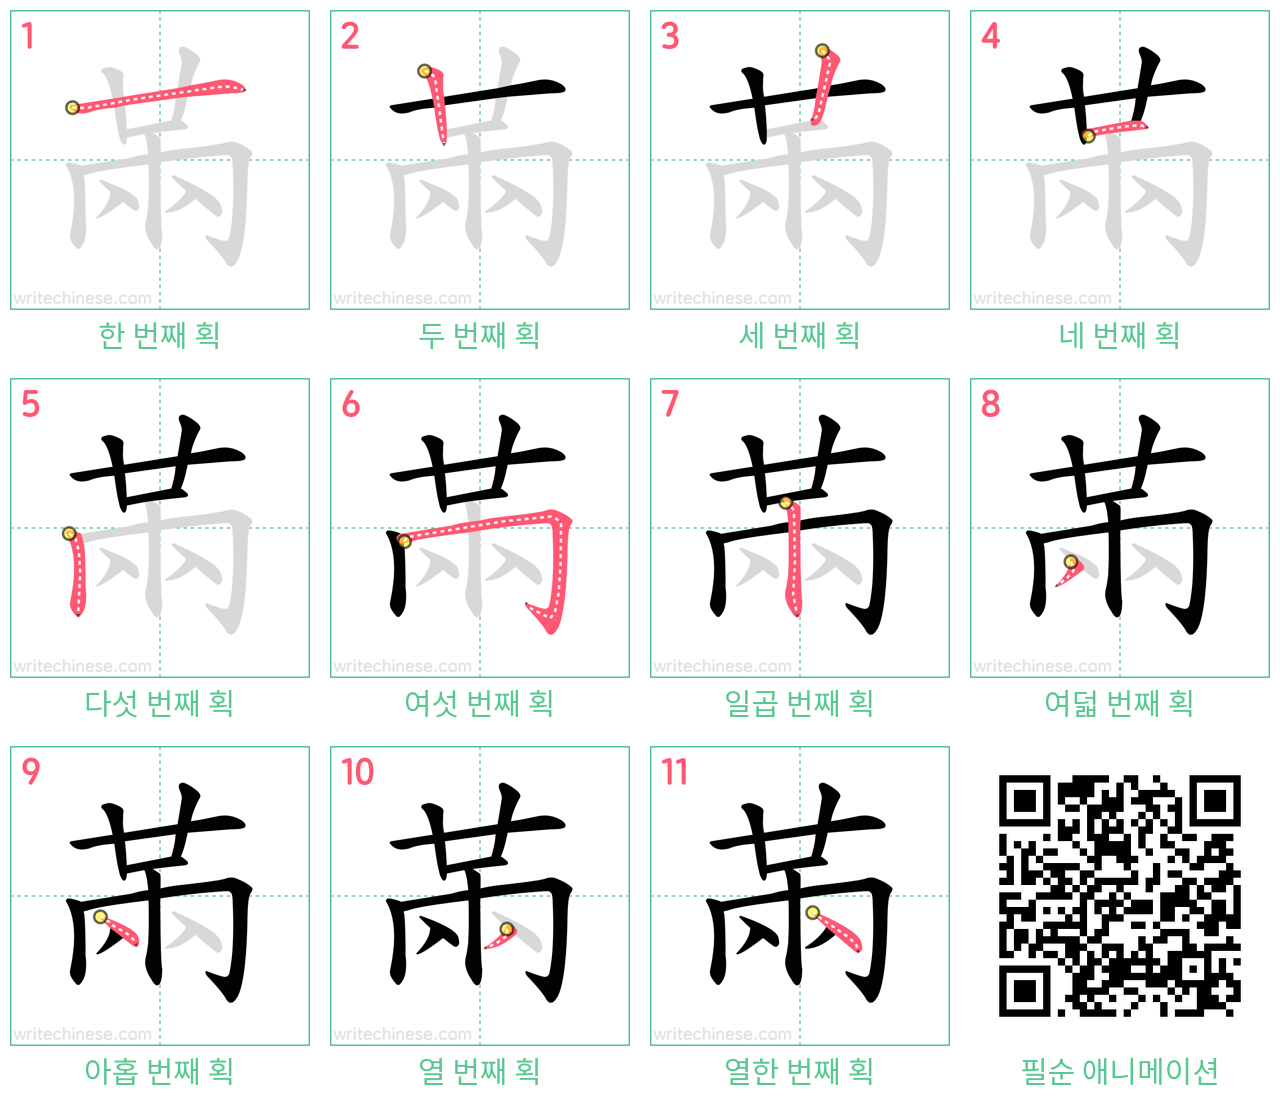 㒼 step-by-step stroke order diagrams